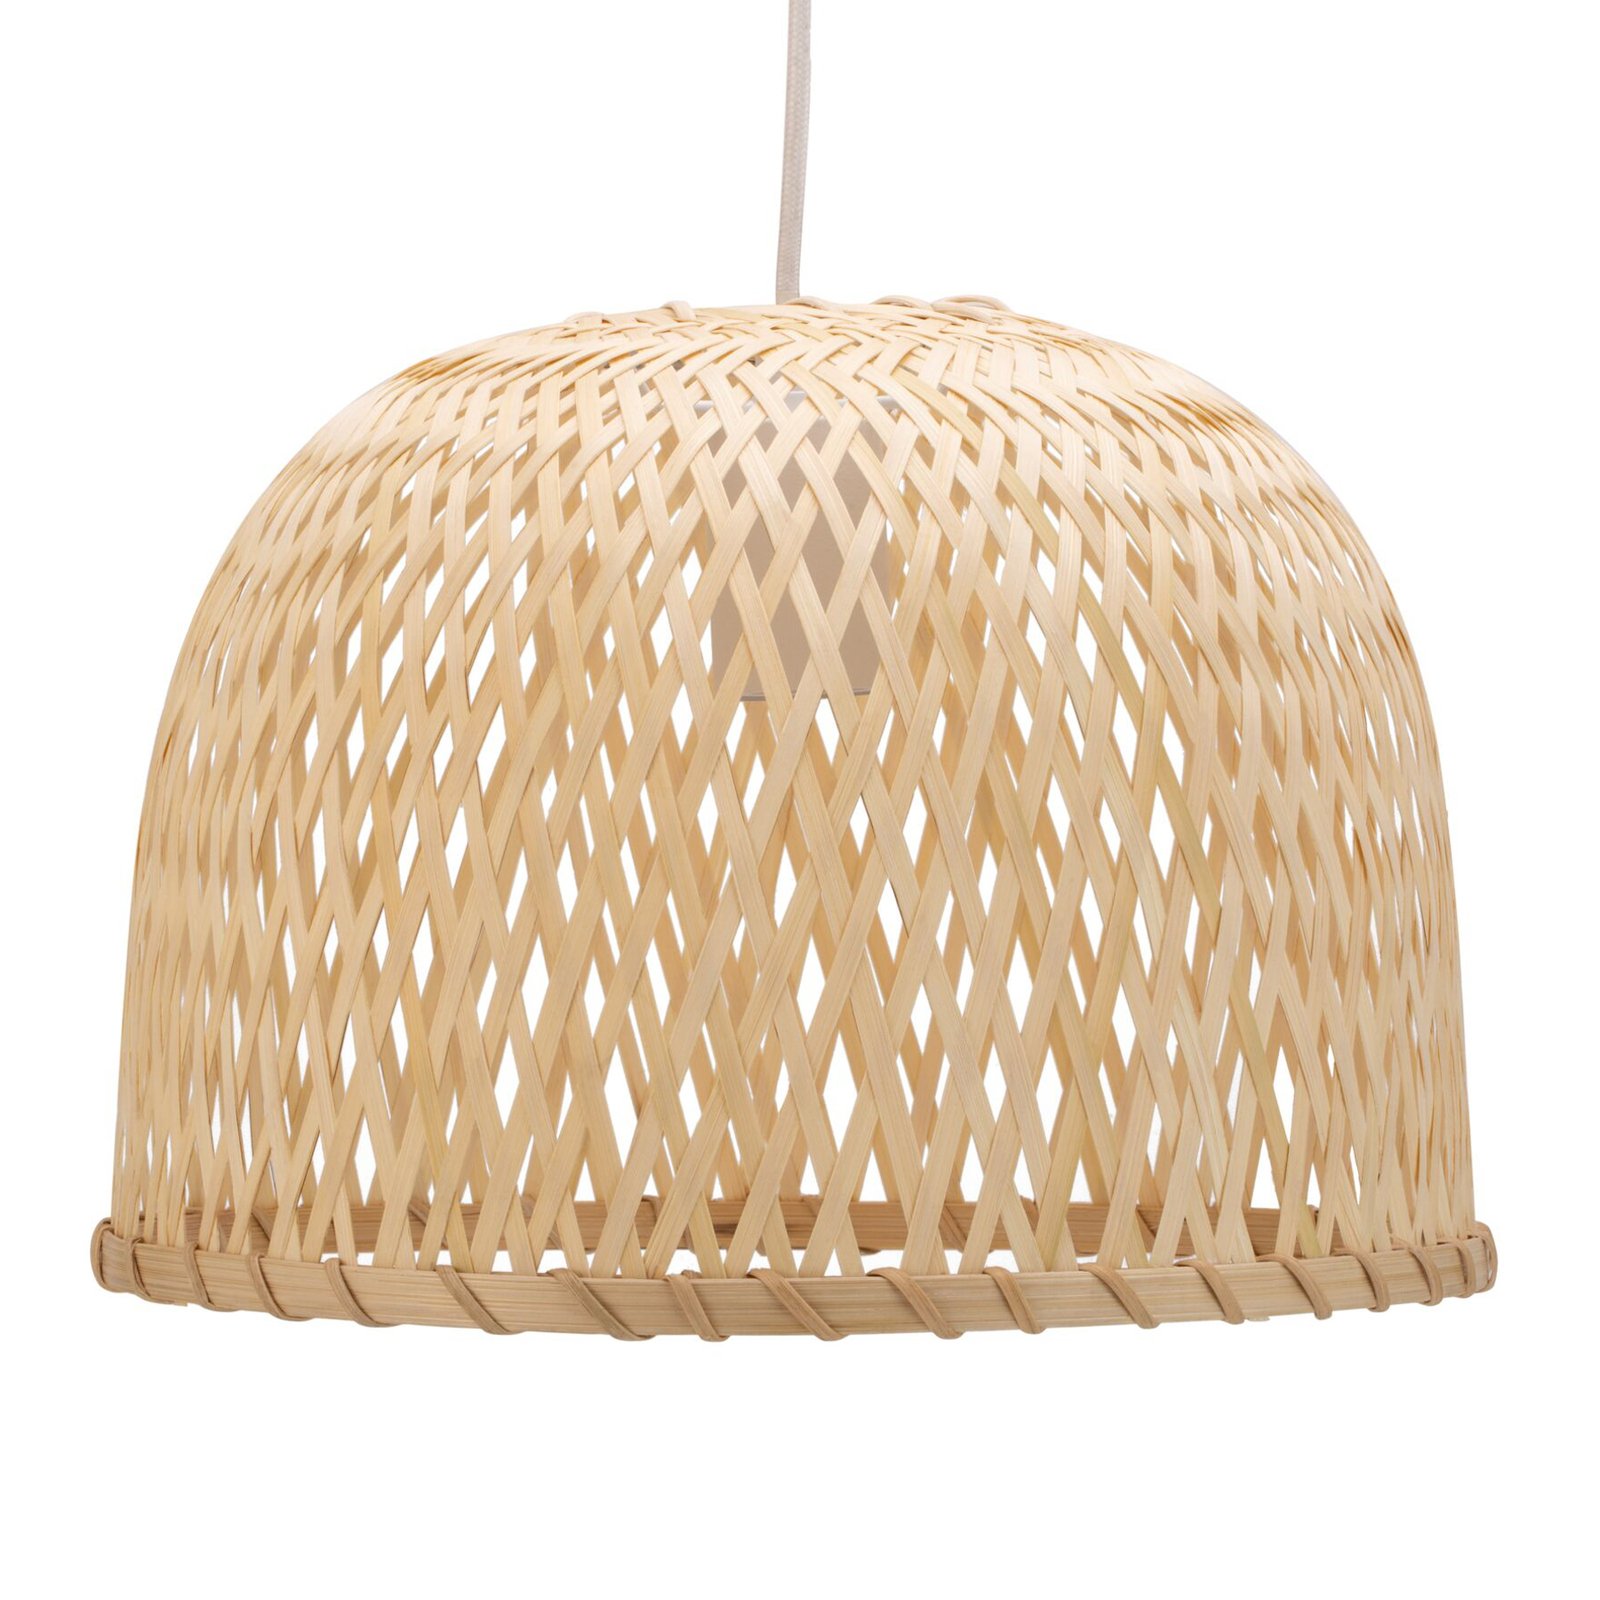 Pauleen Woody Pearl hanglamp met bamboe kap